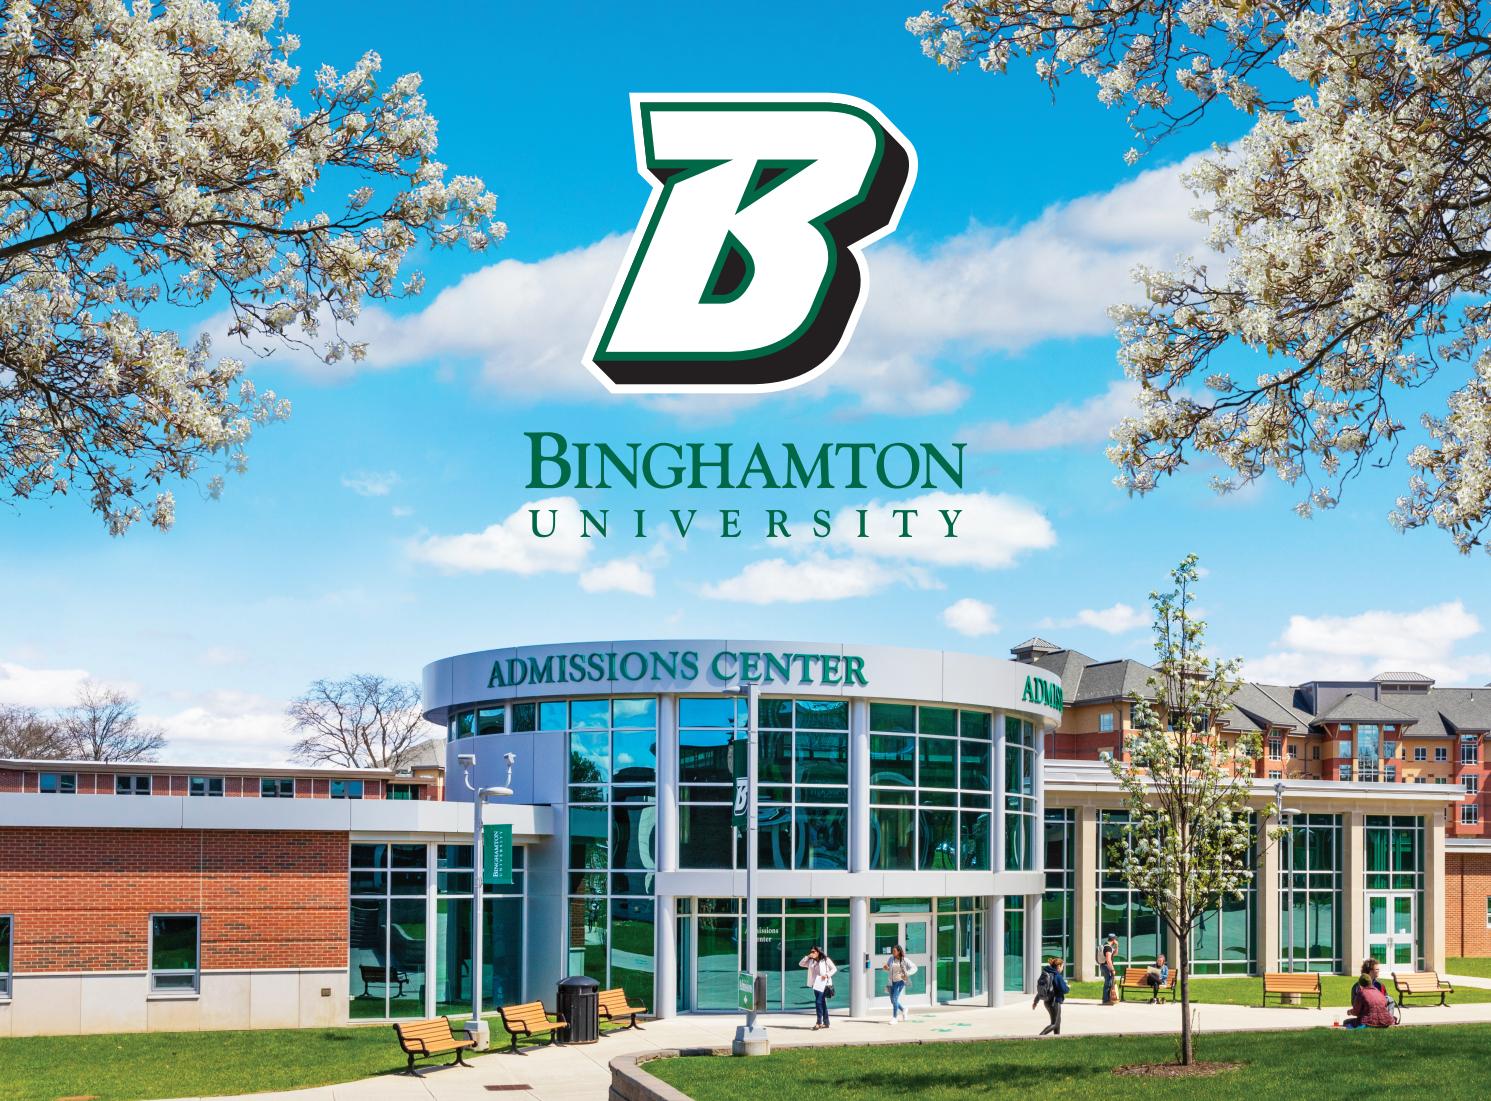 دانشگاه بینگهمتون (Binghamton University) ، که با نام SUNY Binghamton یا BU نیز شناخته می‌شود، یک دانشگاه تحقیقاتی و دولتی با پردیس‌هایی در Binghamton، Vestal، و Johnson City،  در نیویورک است.